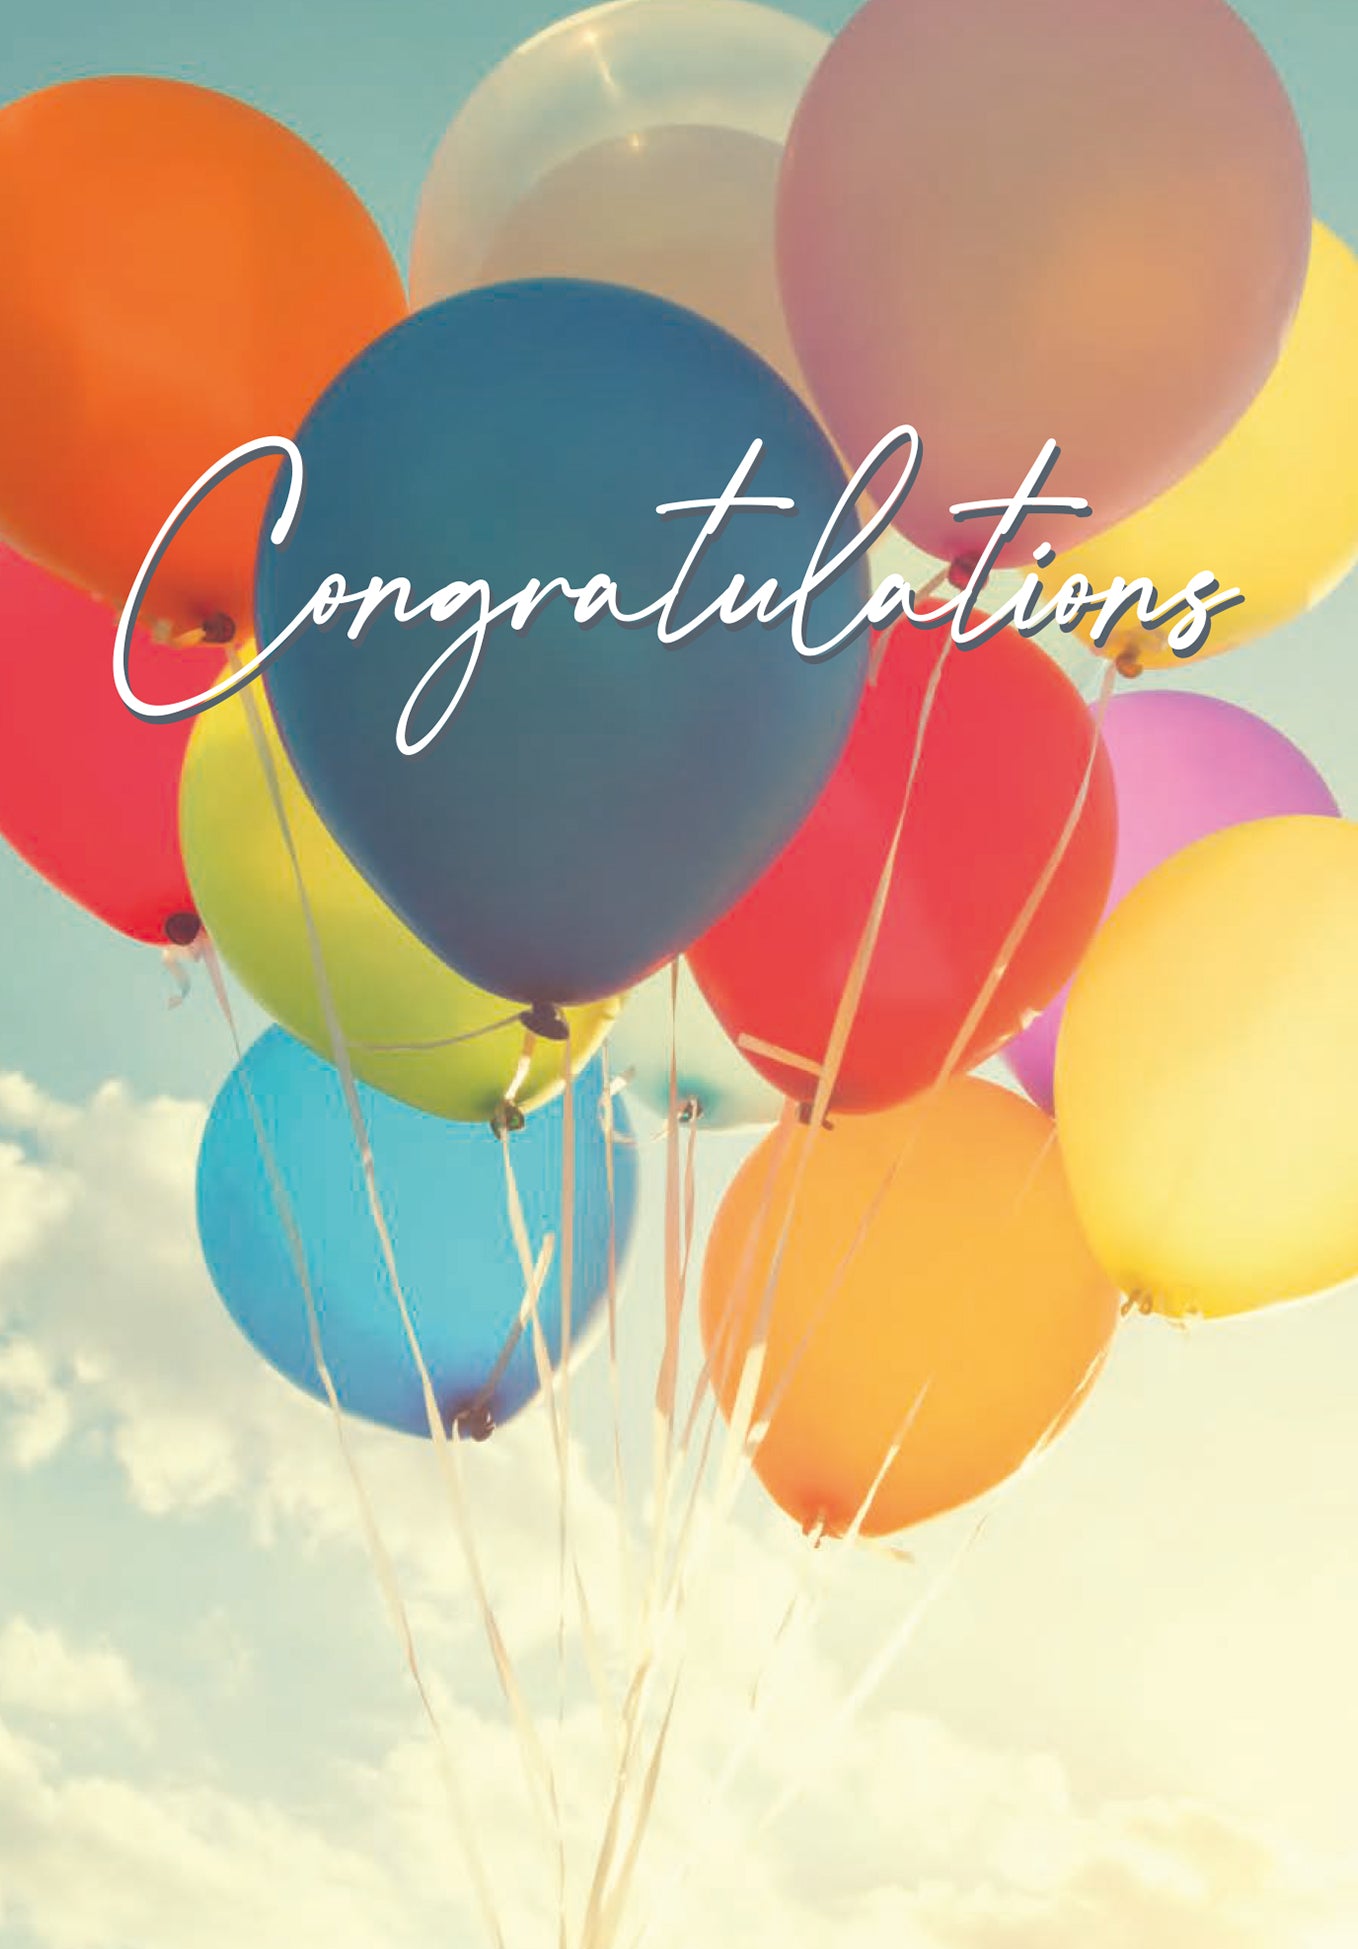 Congratulations - Colourful balloons (Grado di valore)